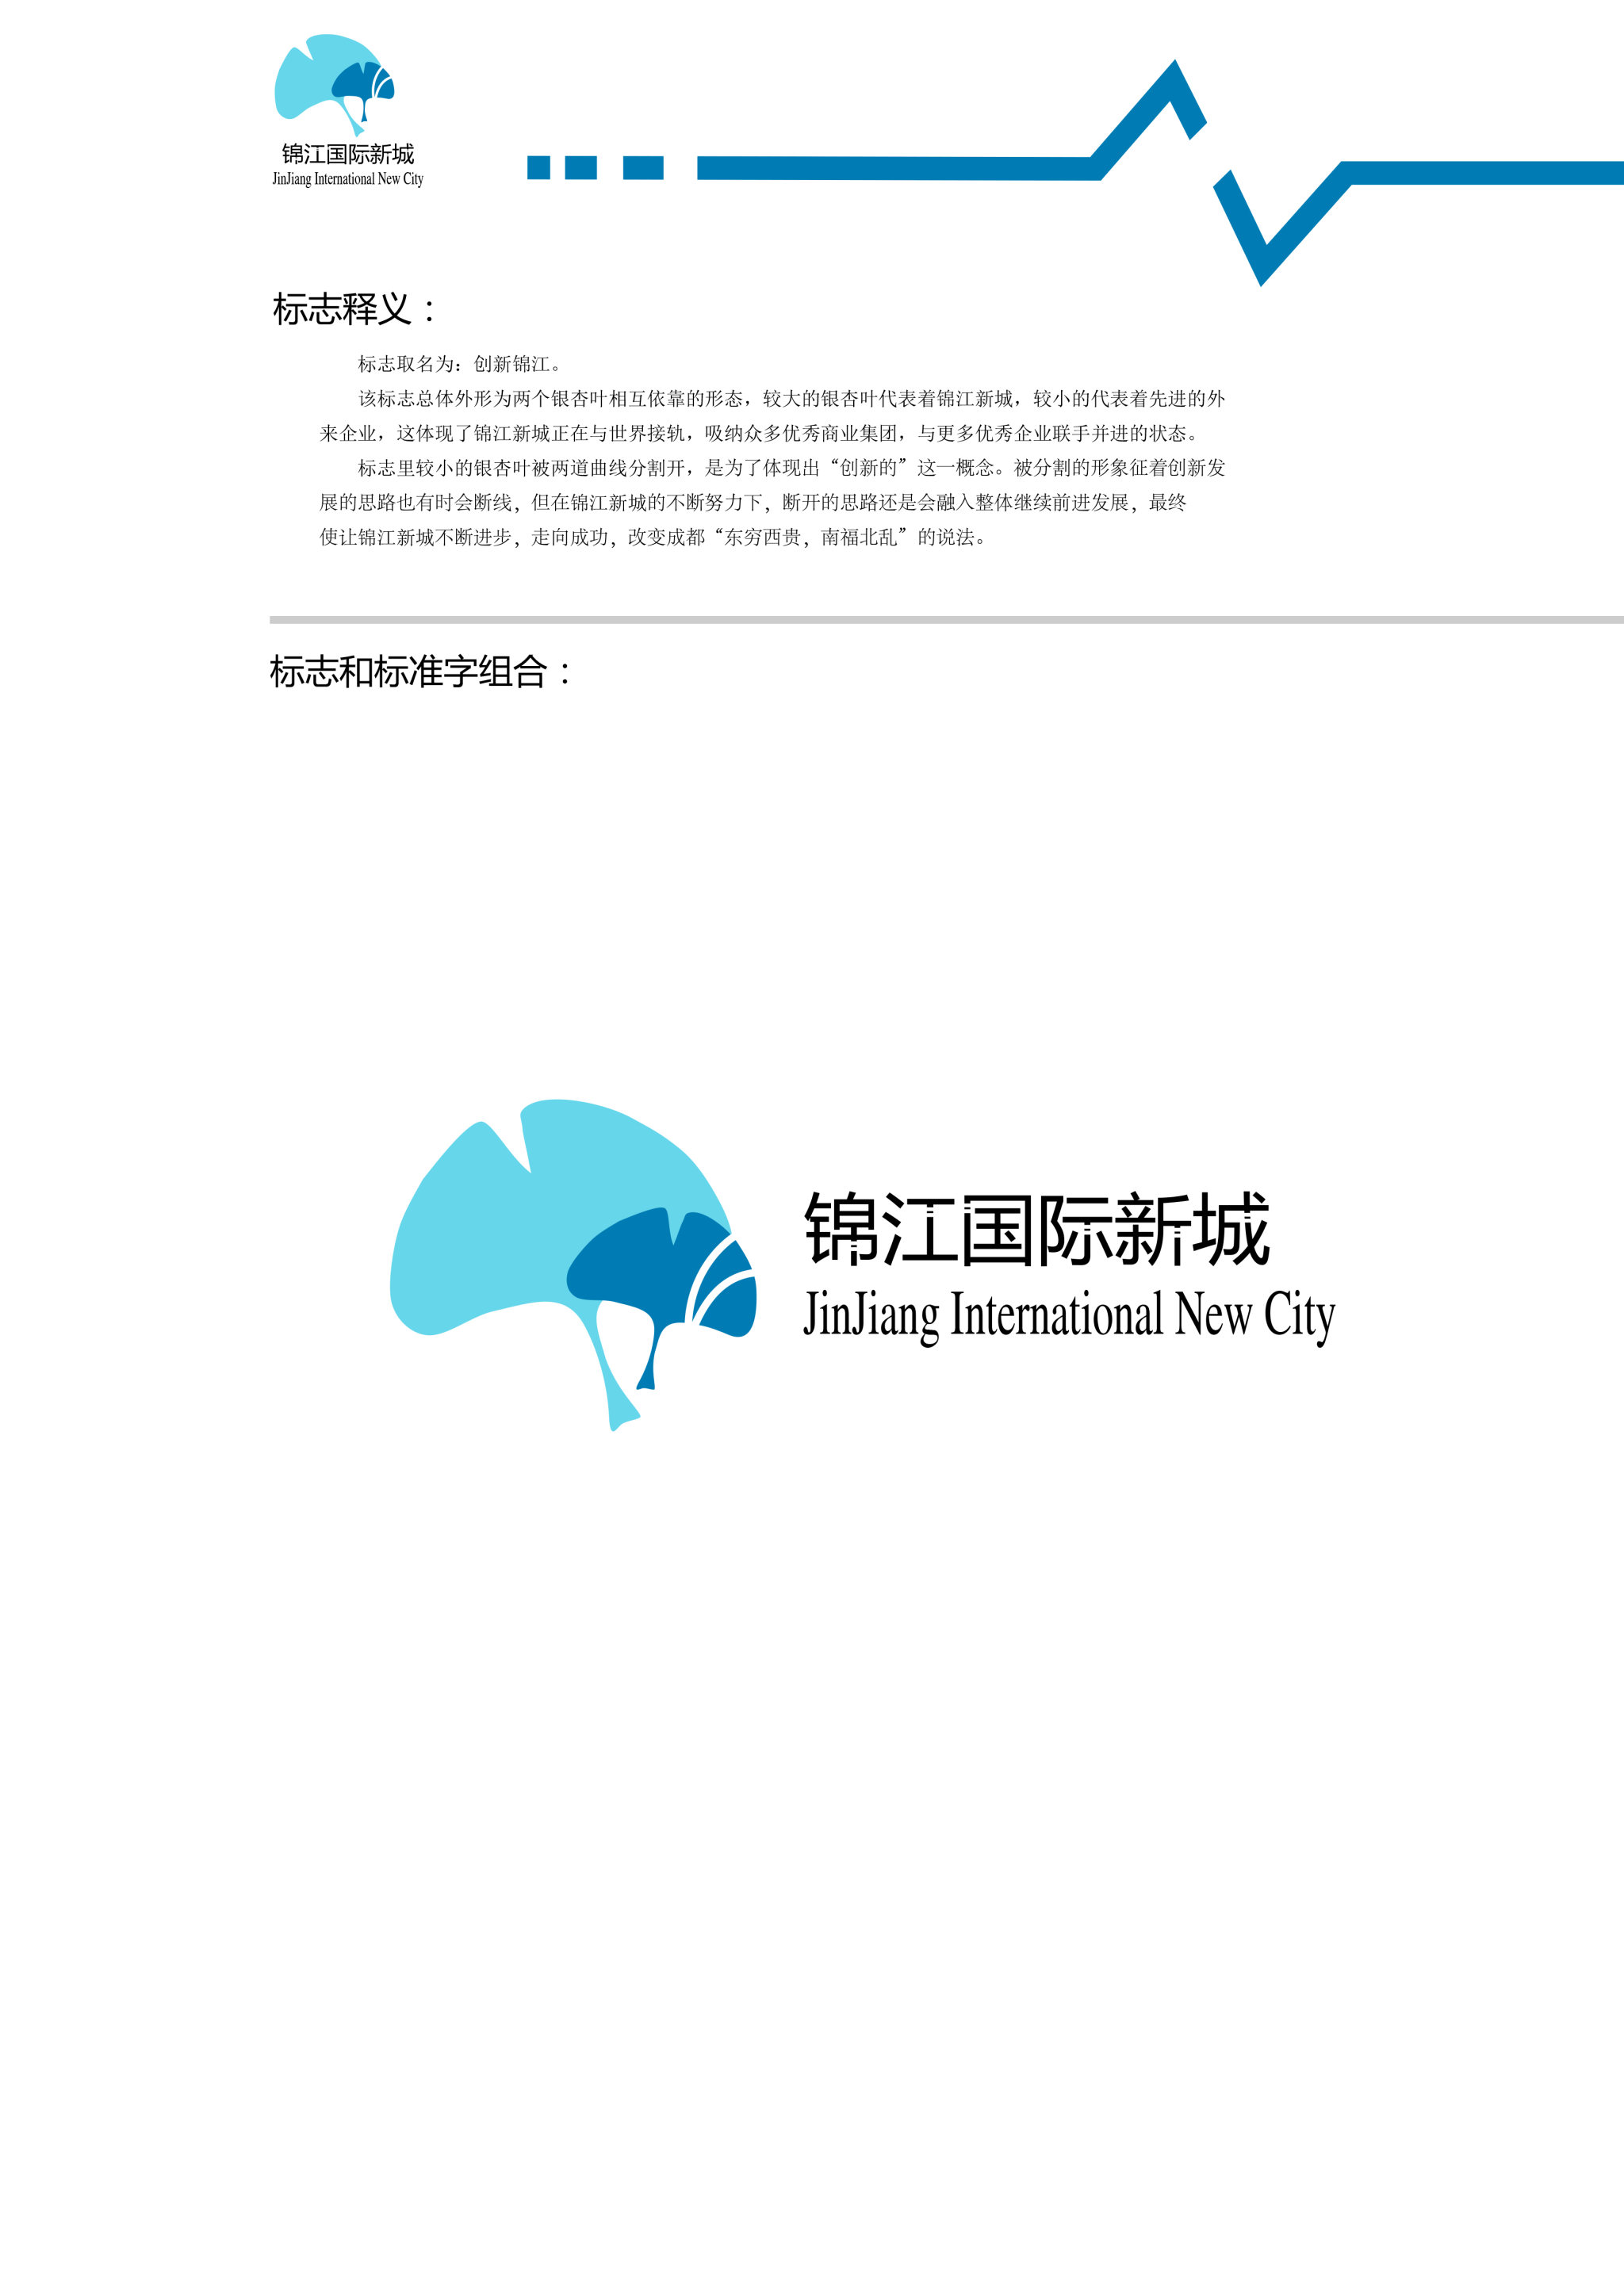 有关锦江国际新城的logo设计.